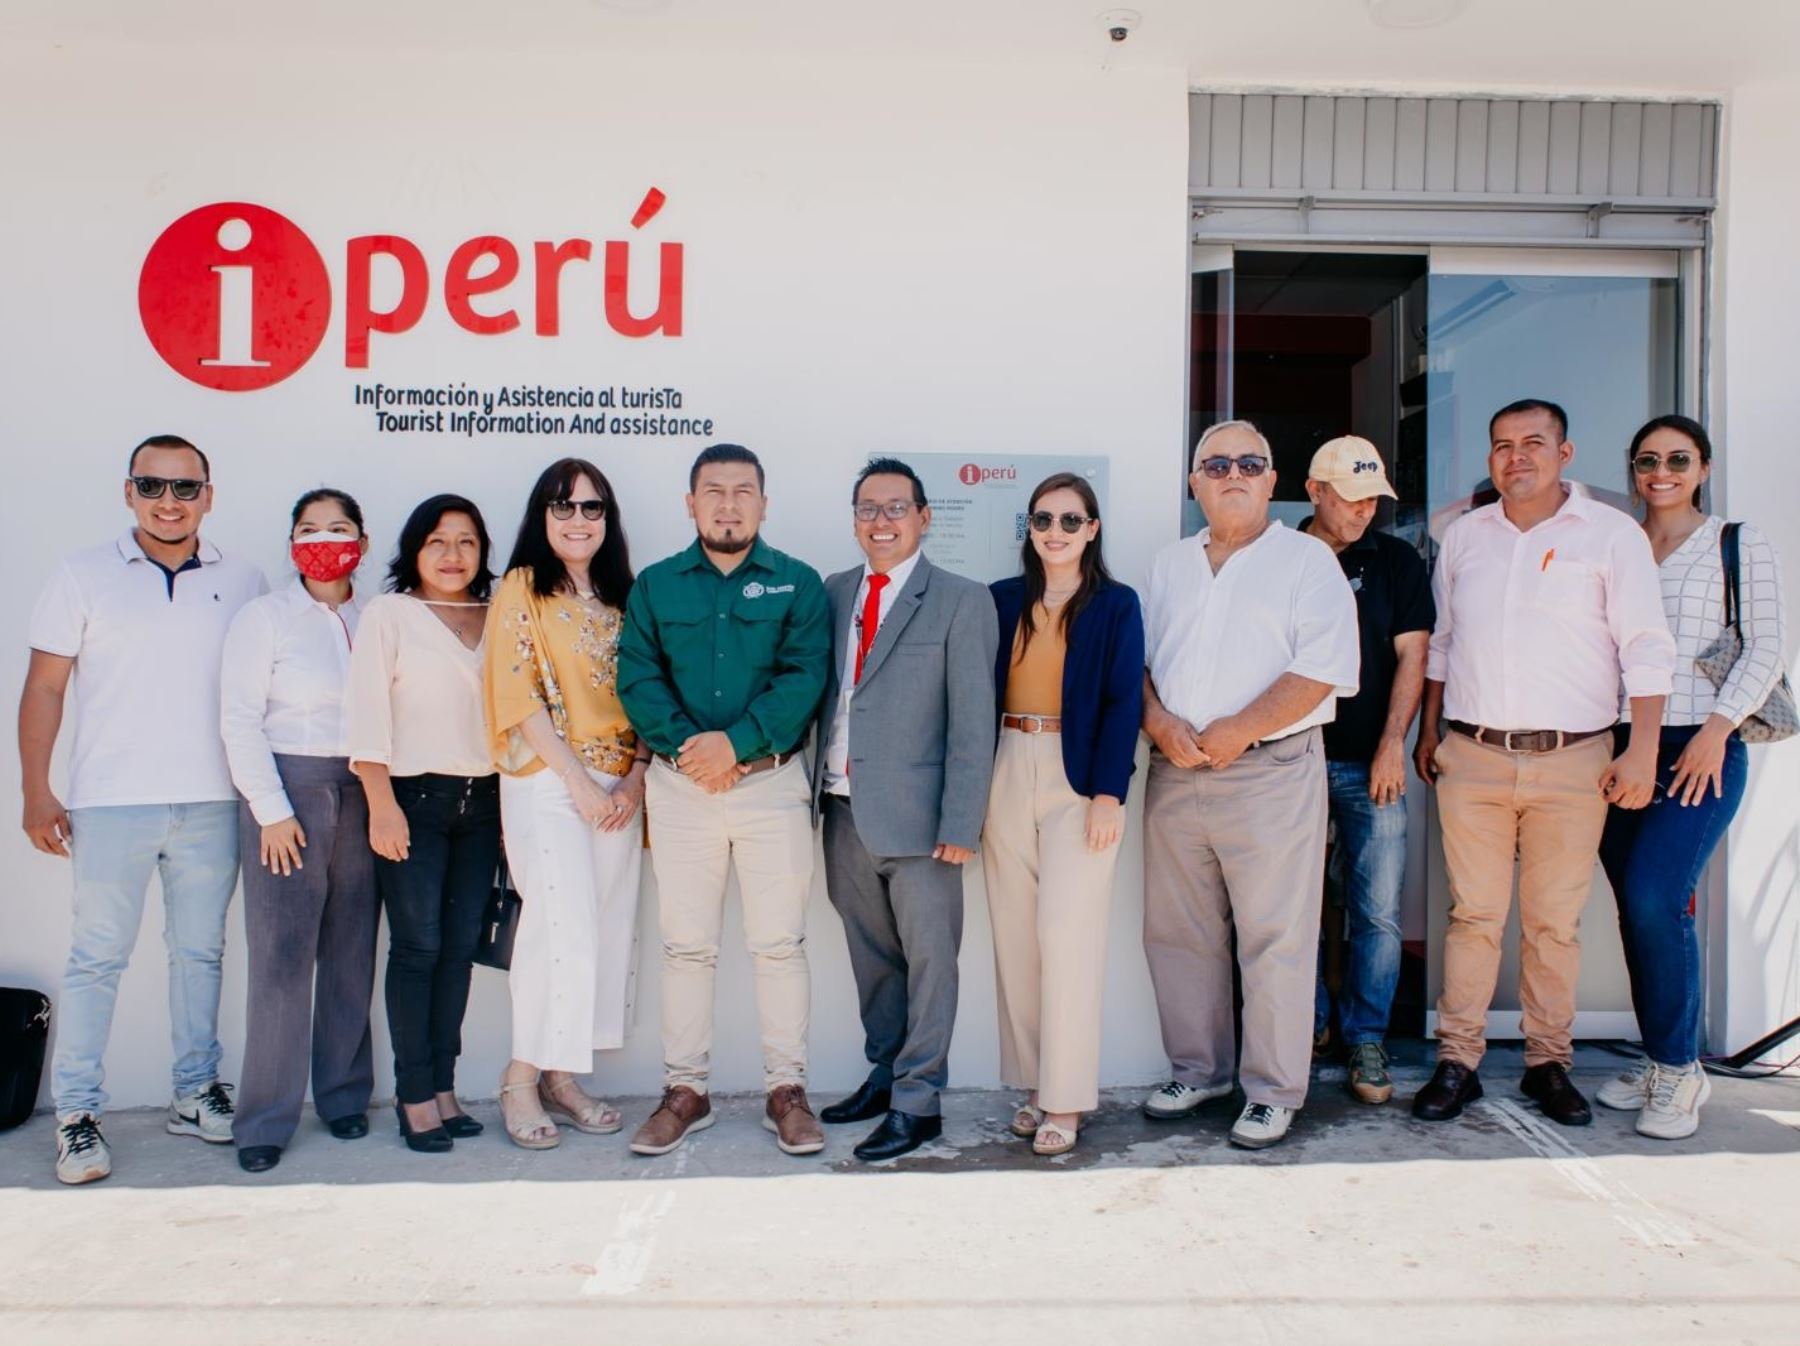 Una nueva oficina de iPerú, que brinda información a los turistas, inauguró Promperú en la ciudad de Tarapoto, región San Martín. ANDINA/Difusión